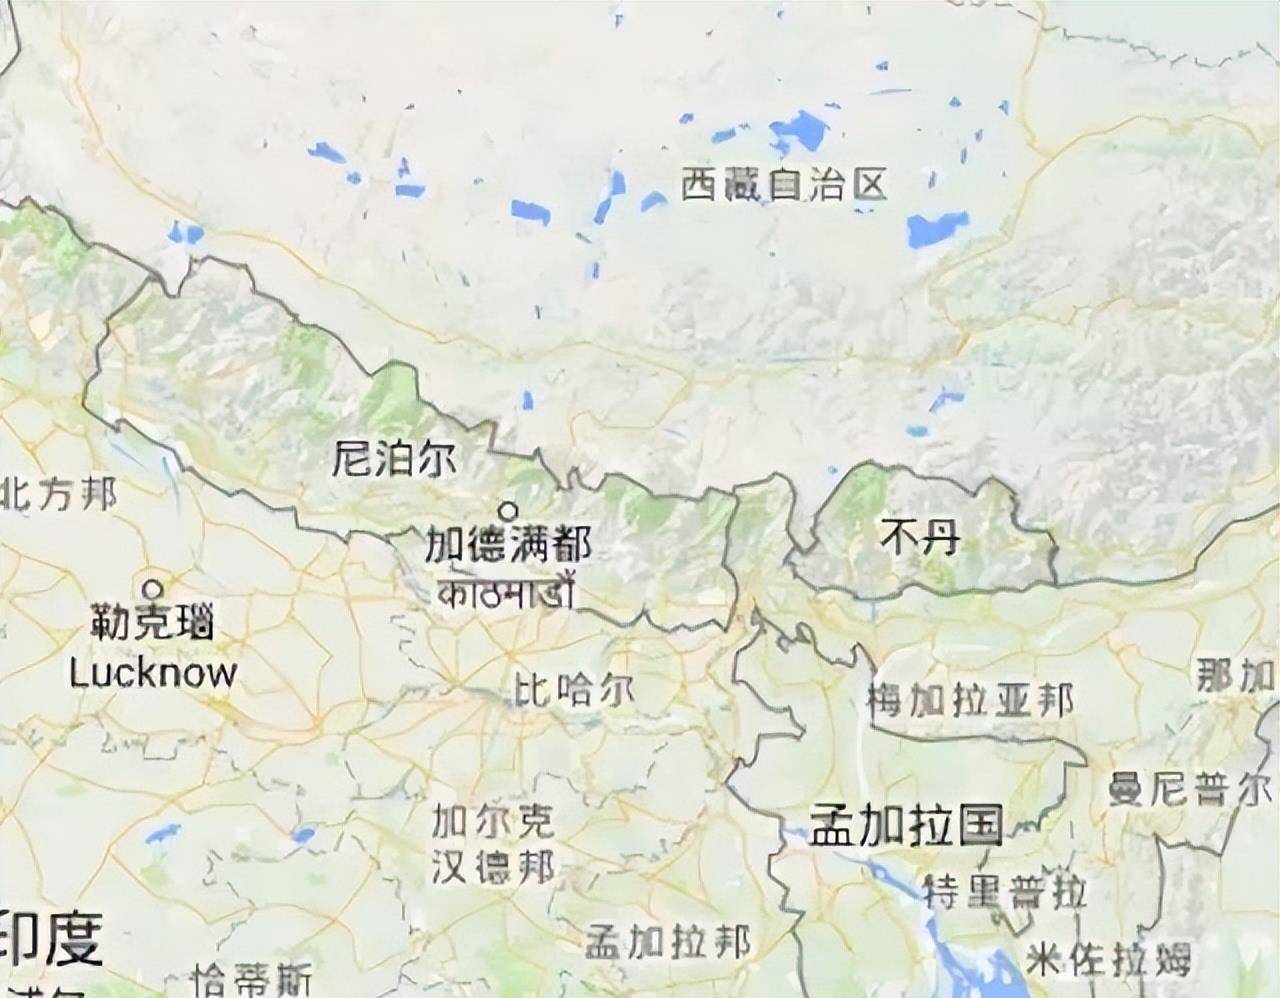 大吉岭地区图片